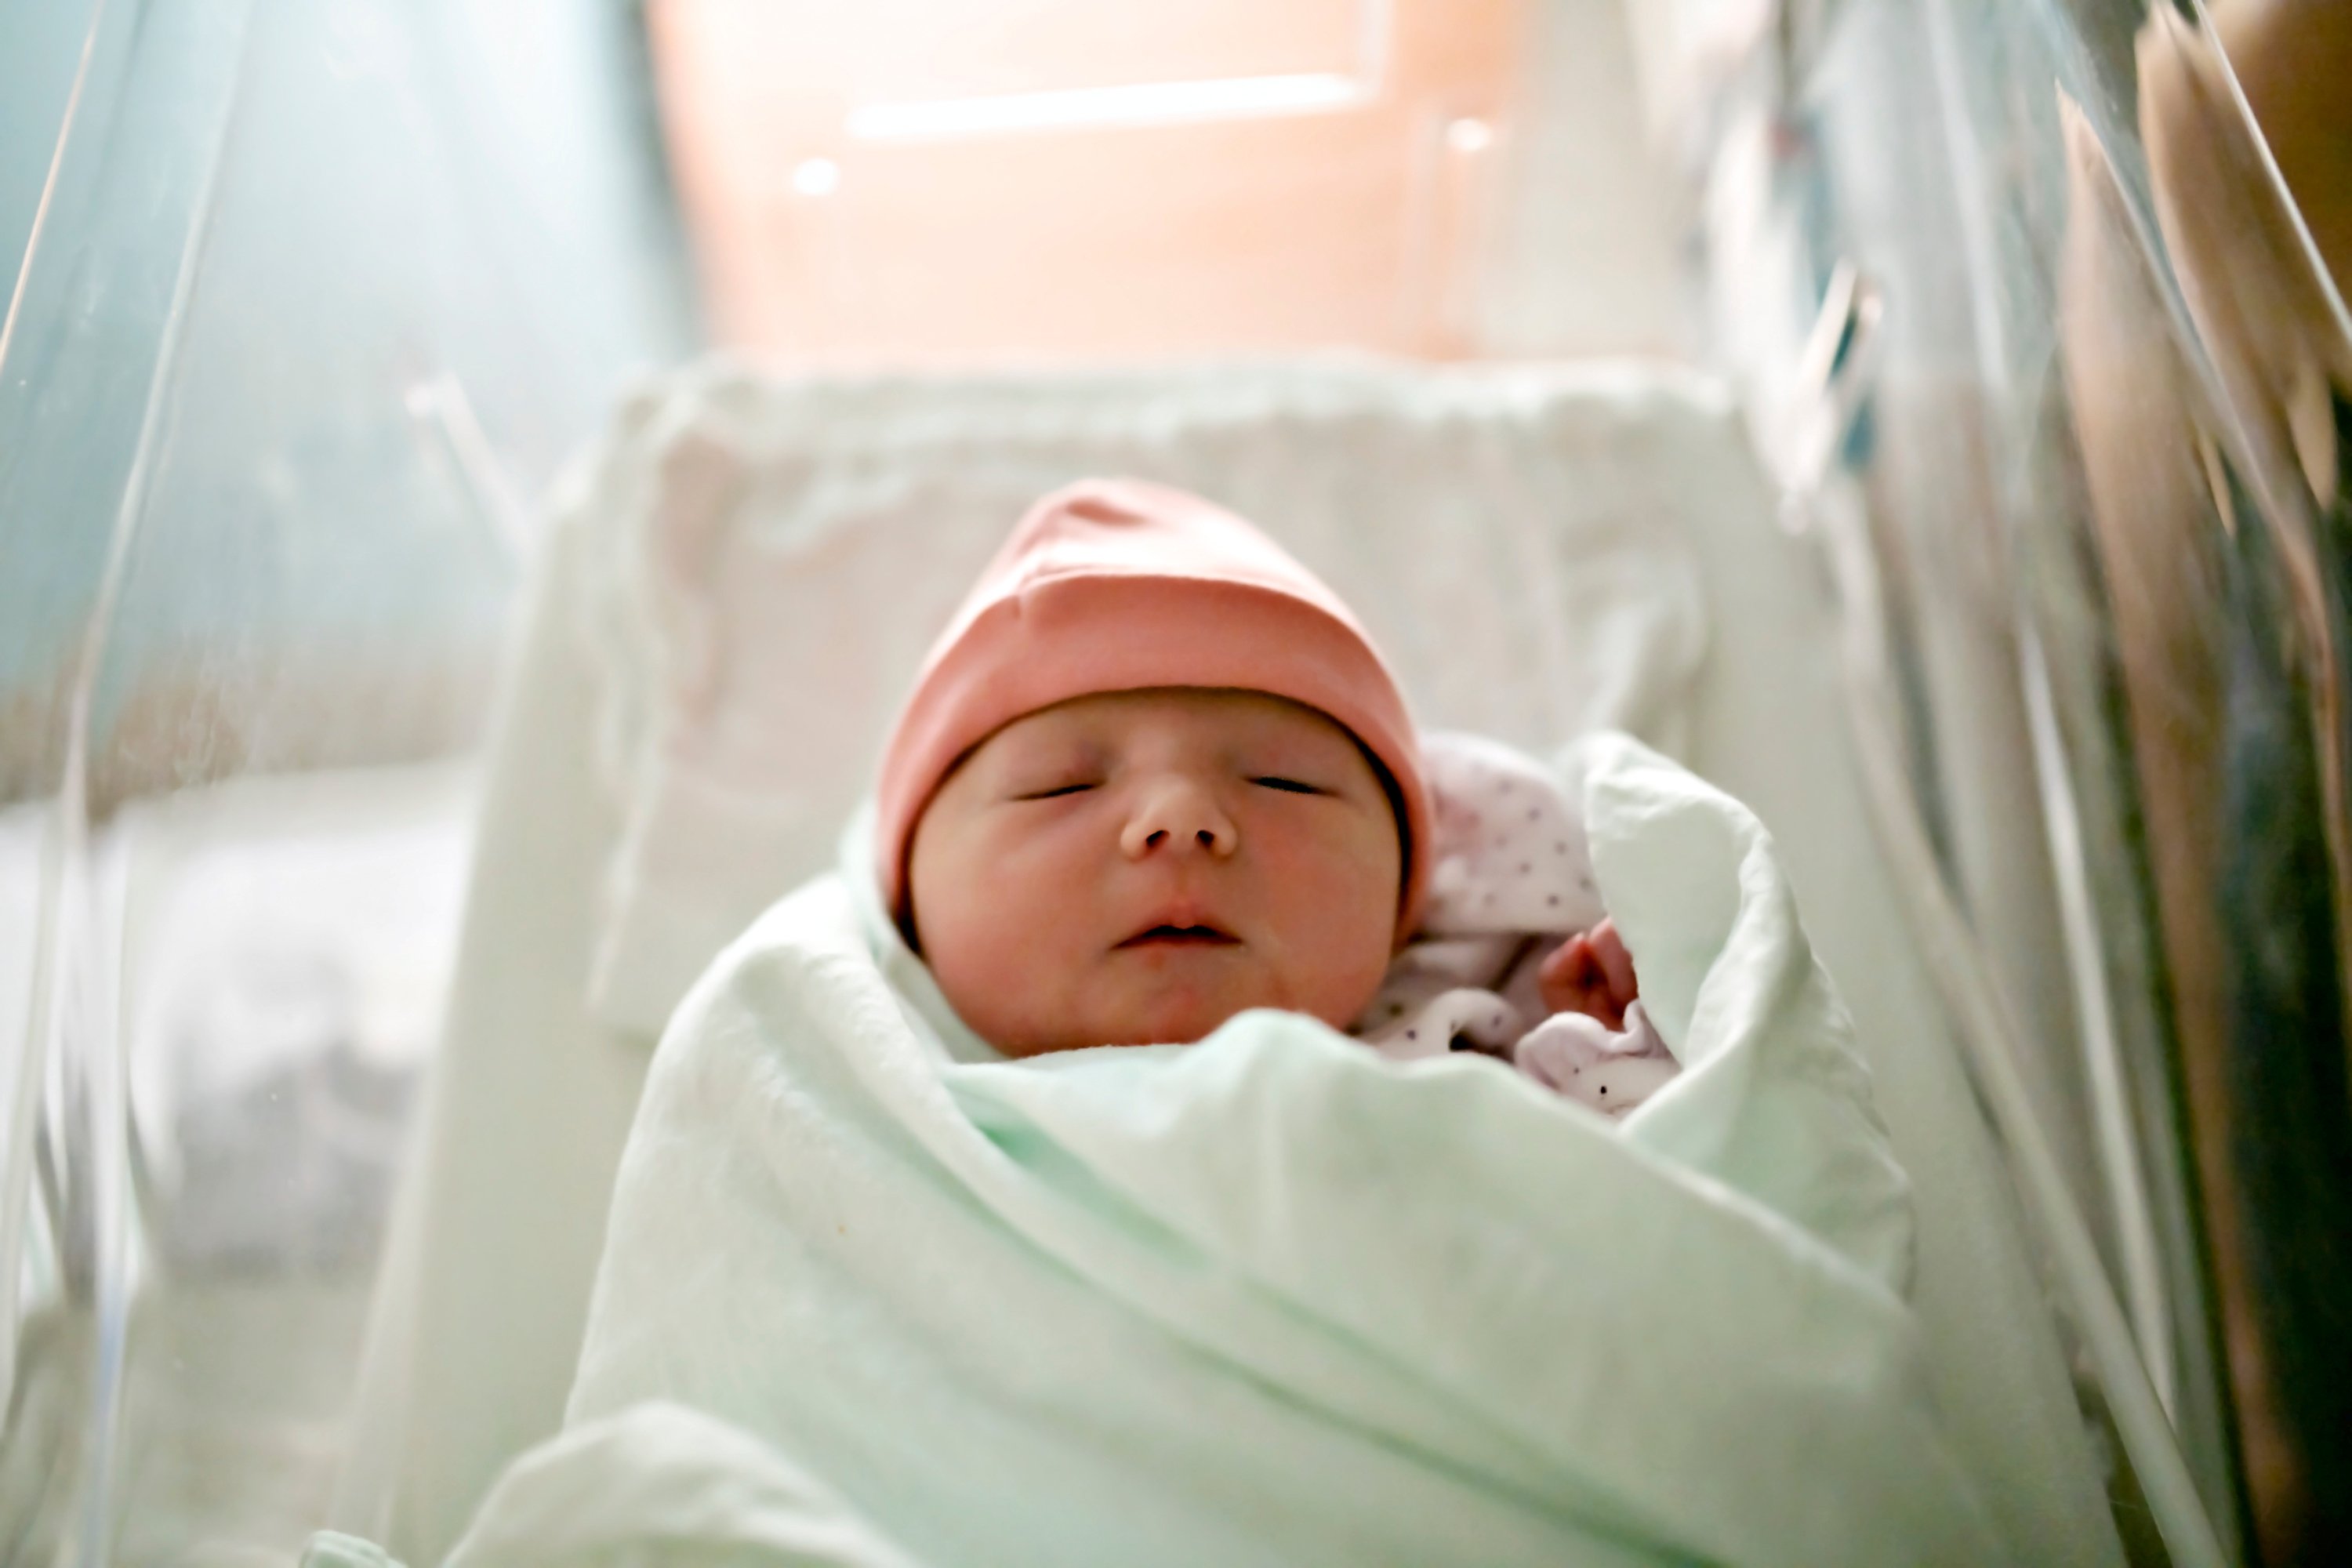 A newborn baby. | Source: Shutterstock